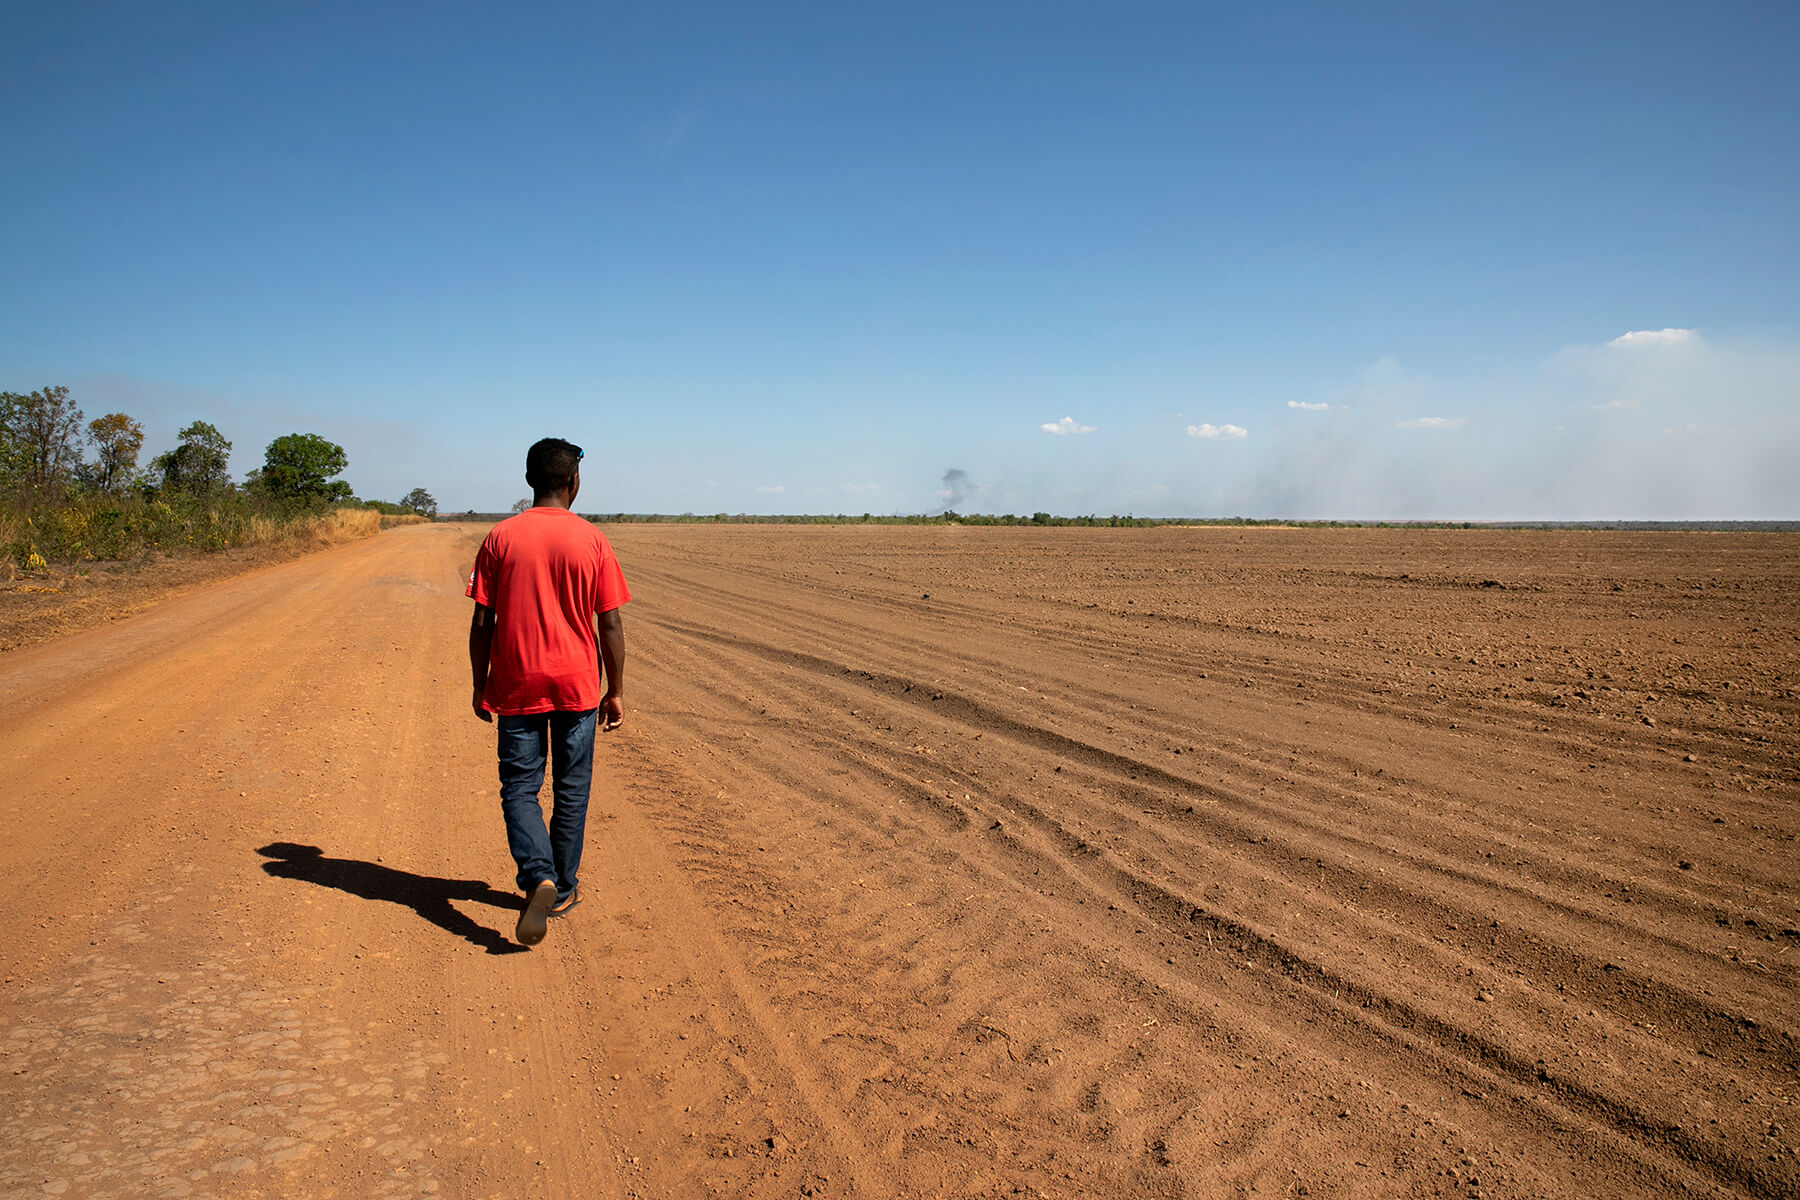 Al sud de Piauí, els camps preparats per cultivar la soja també ocupen tota la zona de l’altiplà.